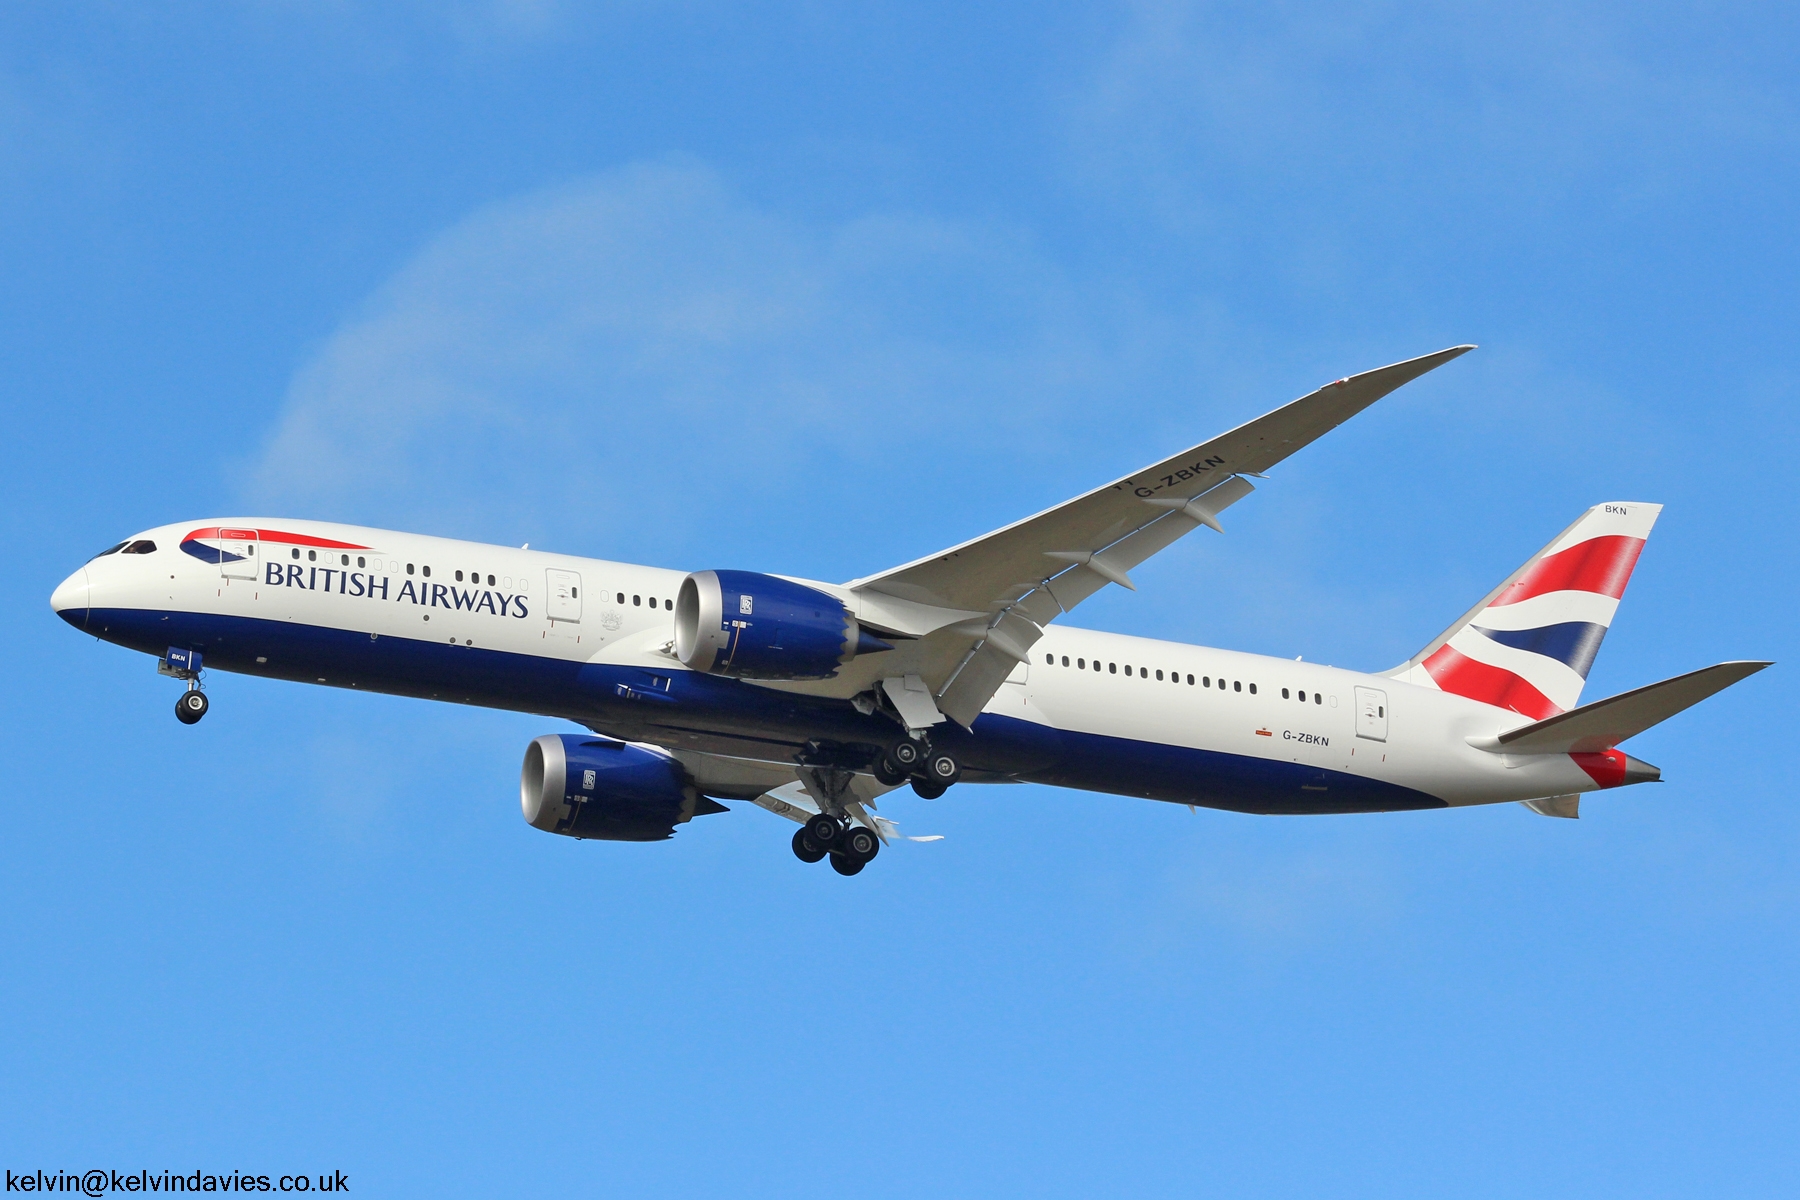 British Airways 787 G-ZBKN